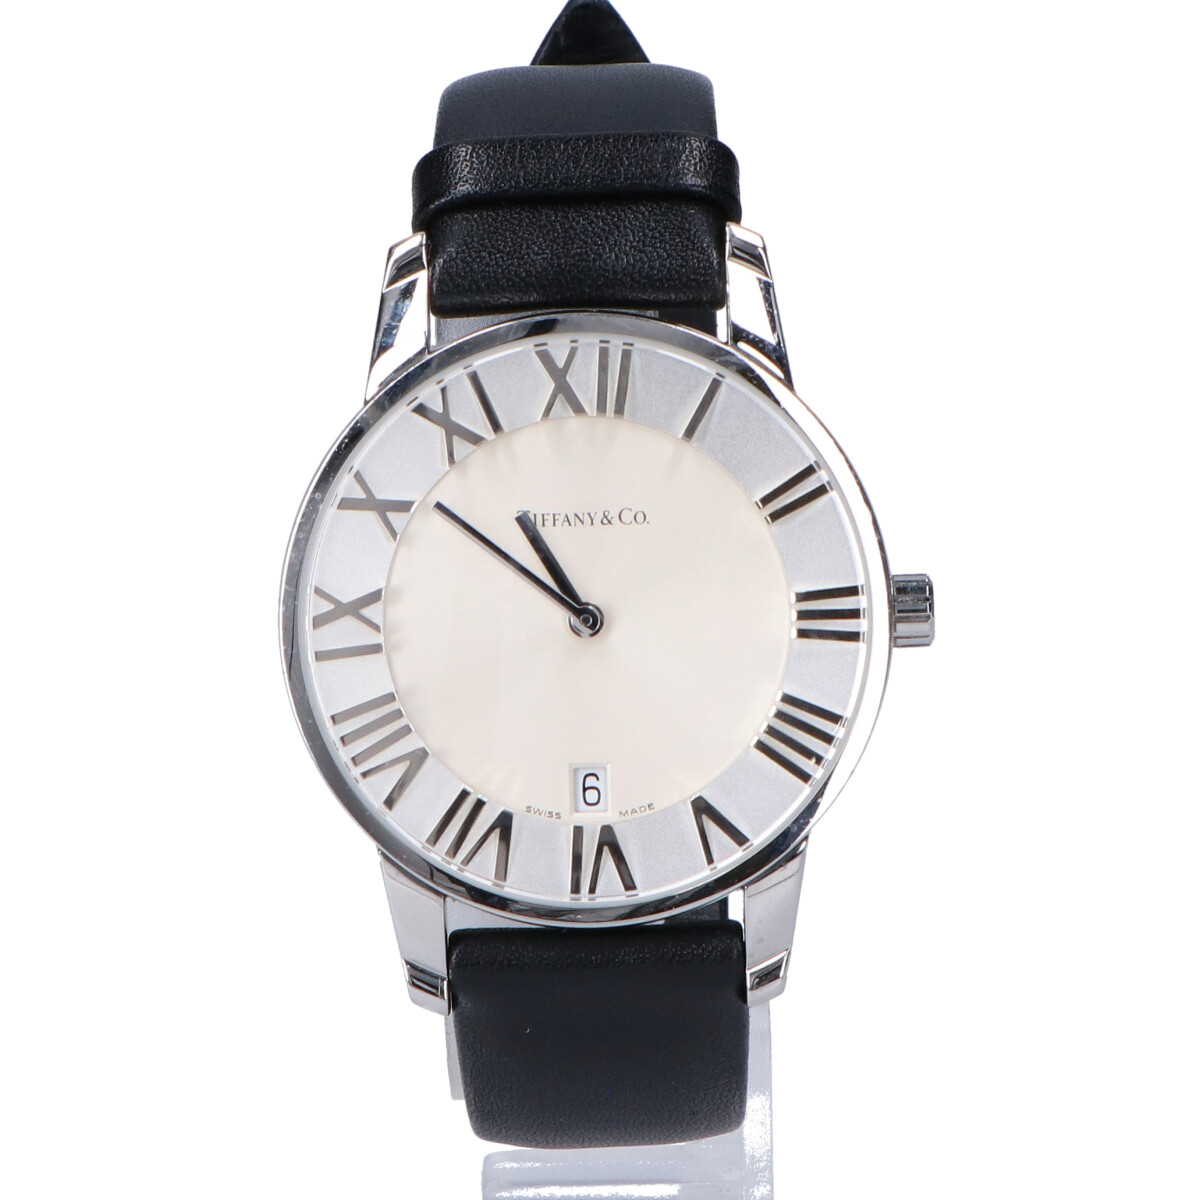 ティファニーの ATLAS DOME クオーツ 革ベルト 腕時計の買取実績です。